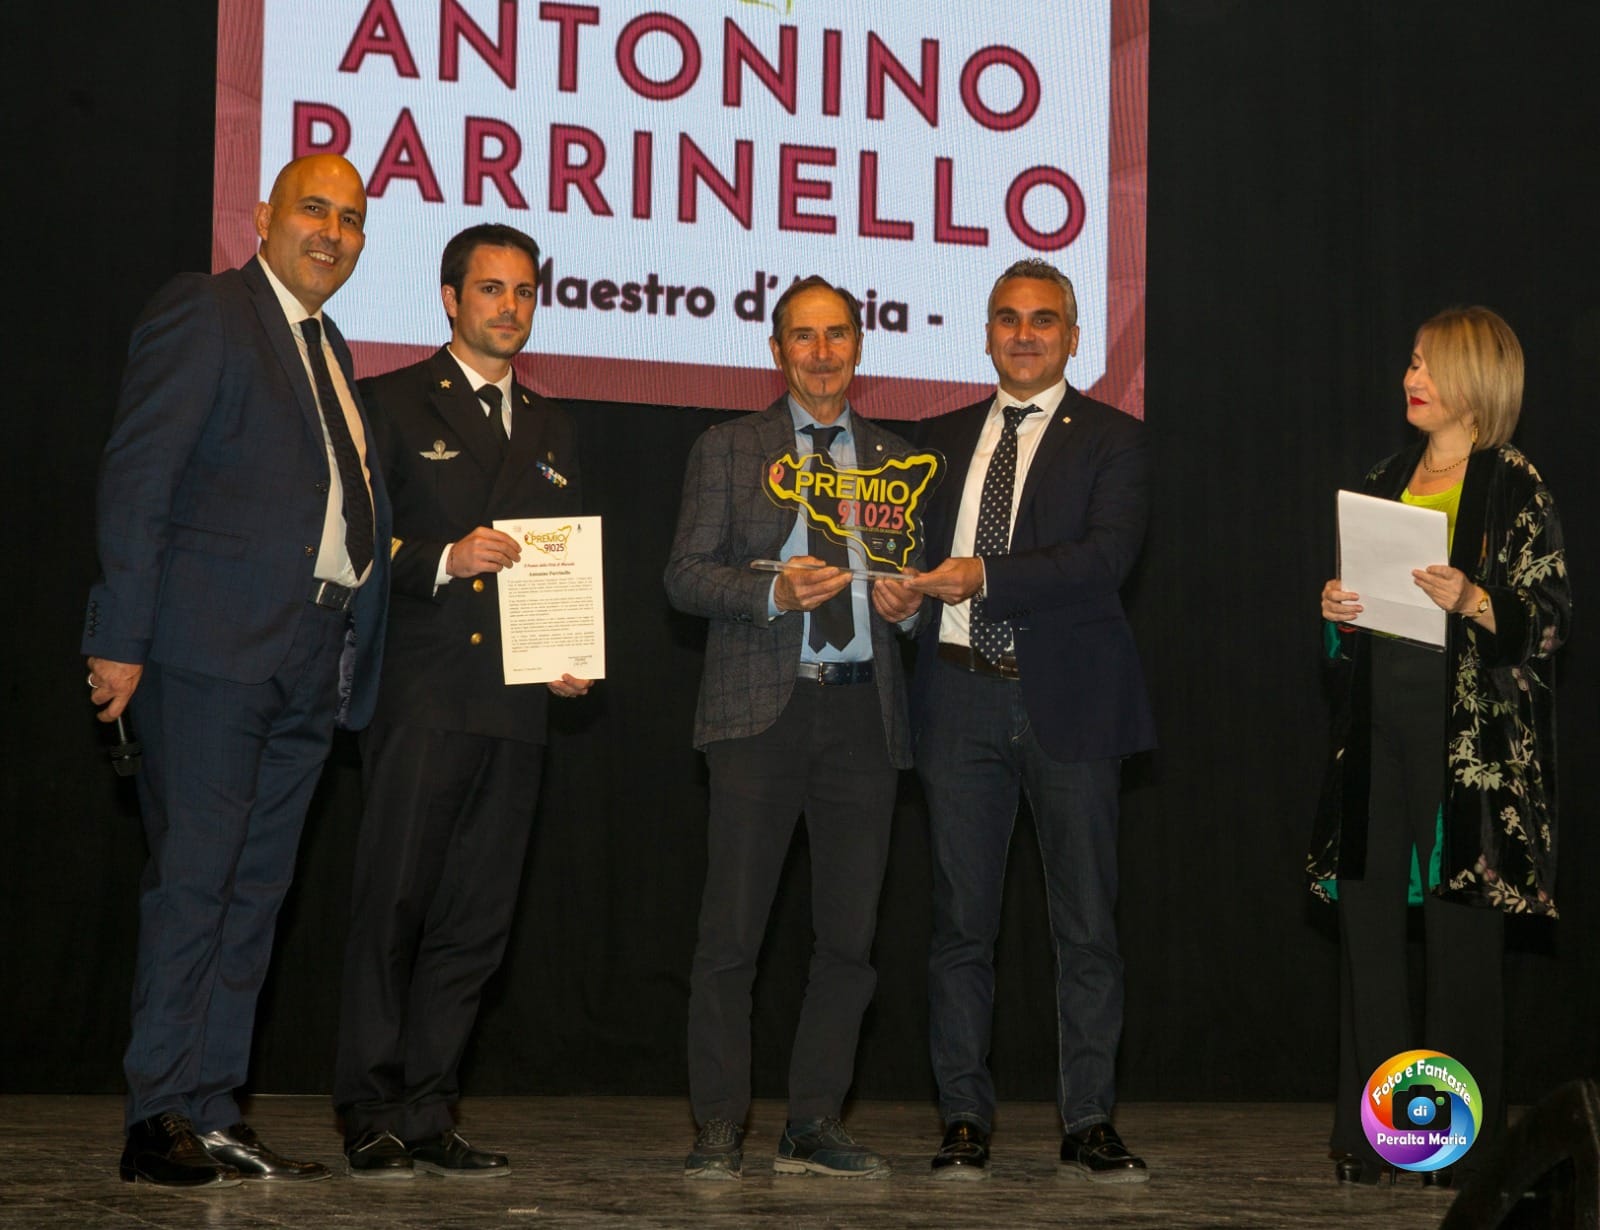 Testimone e protagonista di un’arte antica: il Maestro d’ascia Antonino Parrinello riceve il Premio 91025 – VIDEO